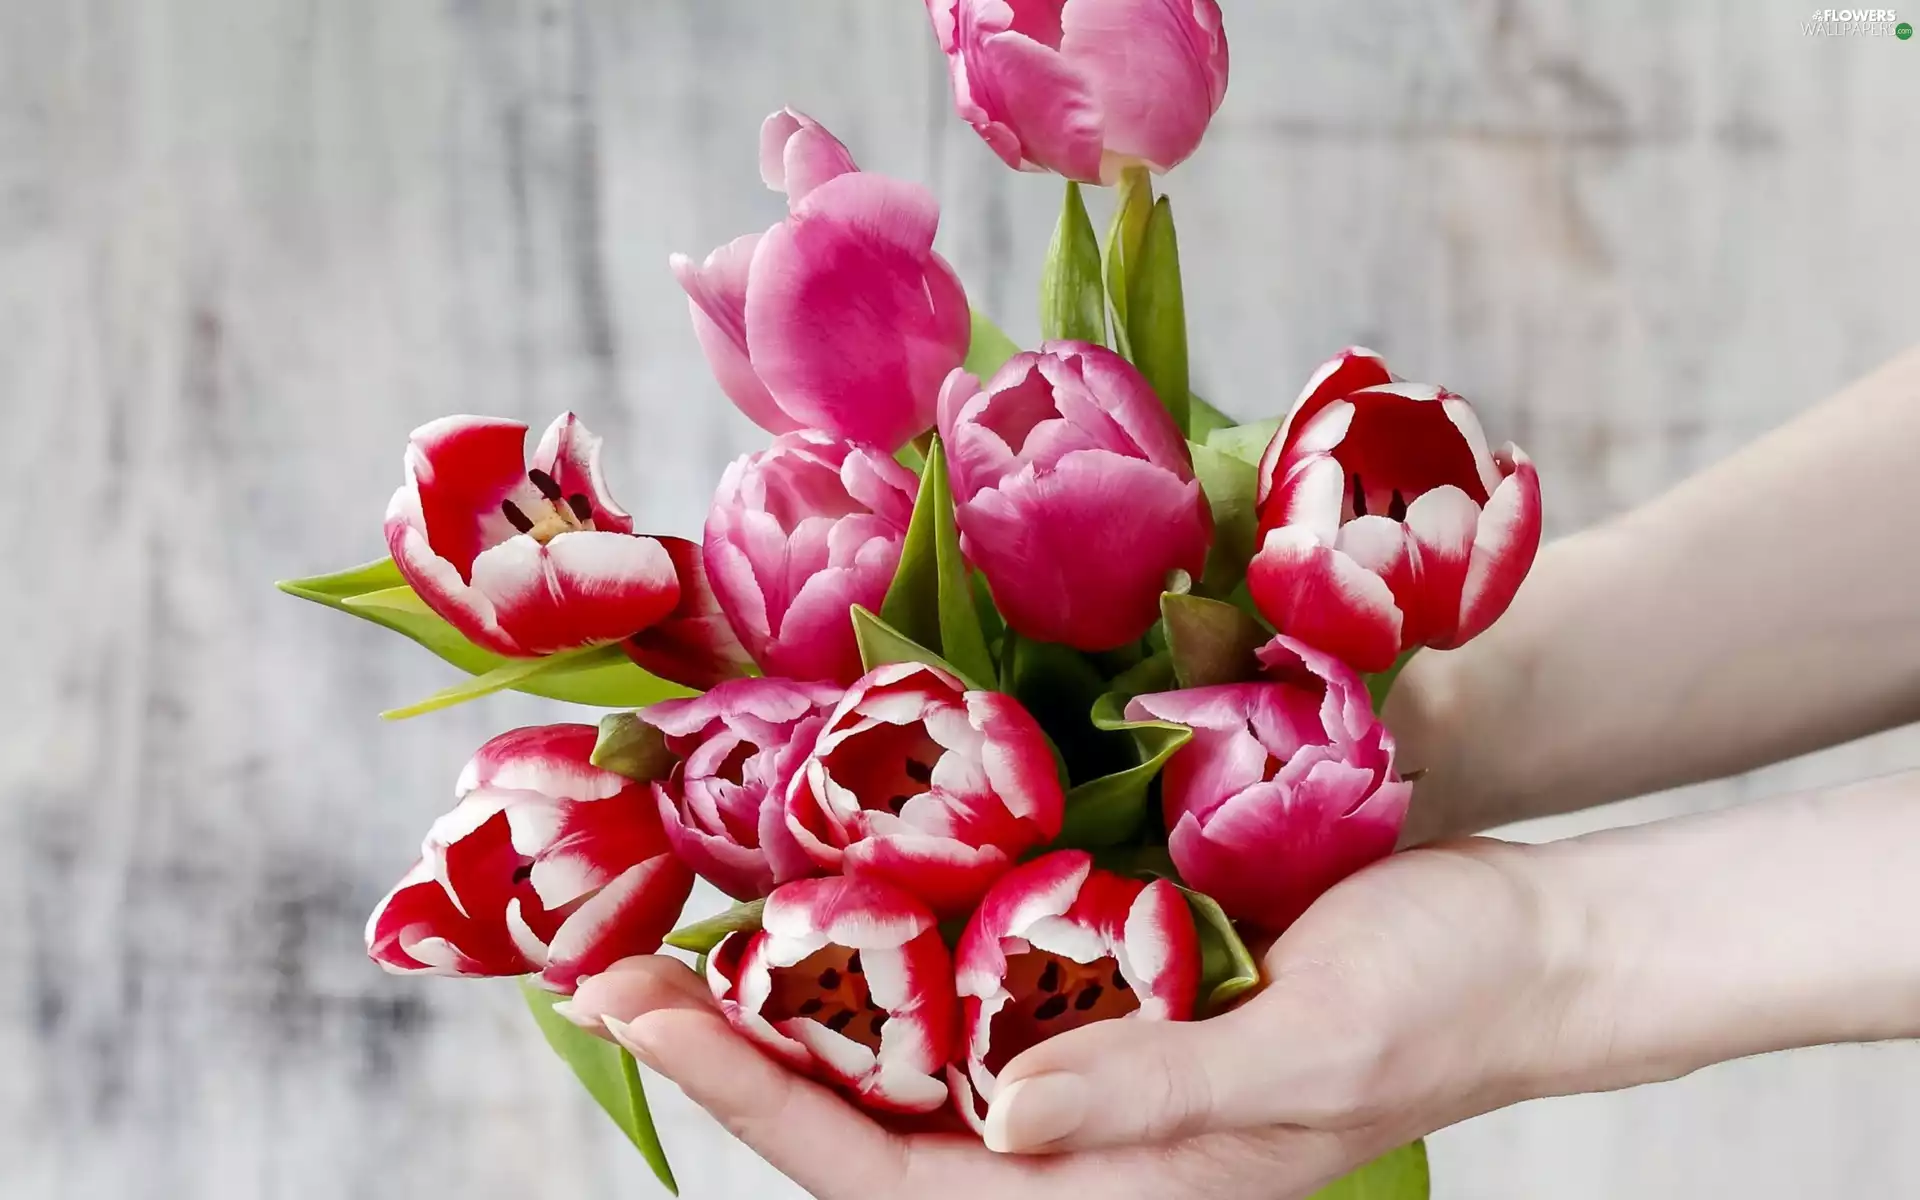 Tulips, Flowers, Hands